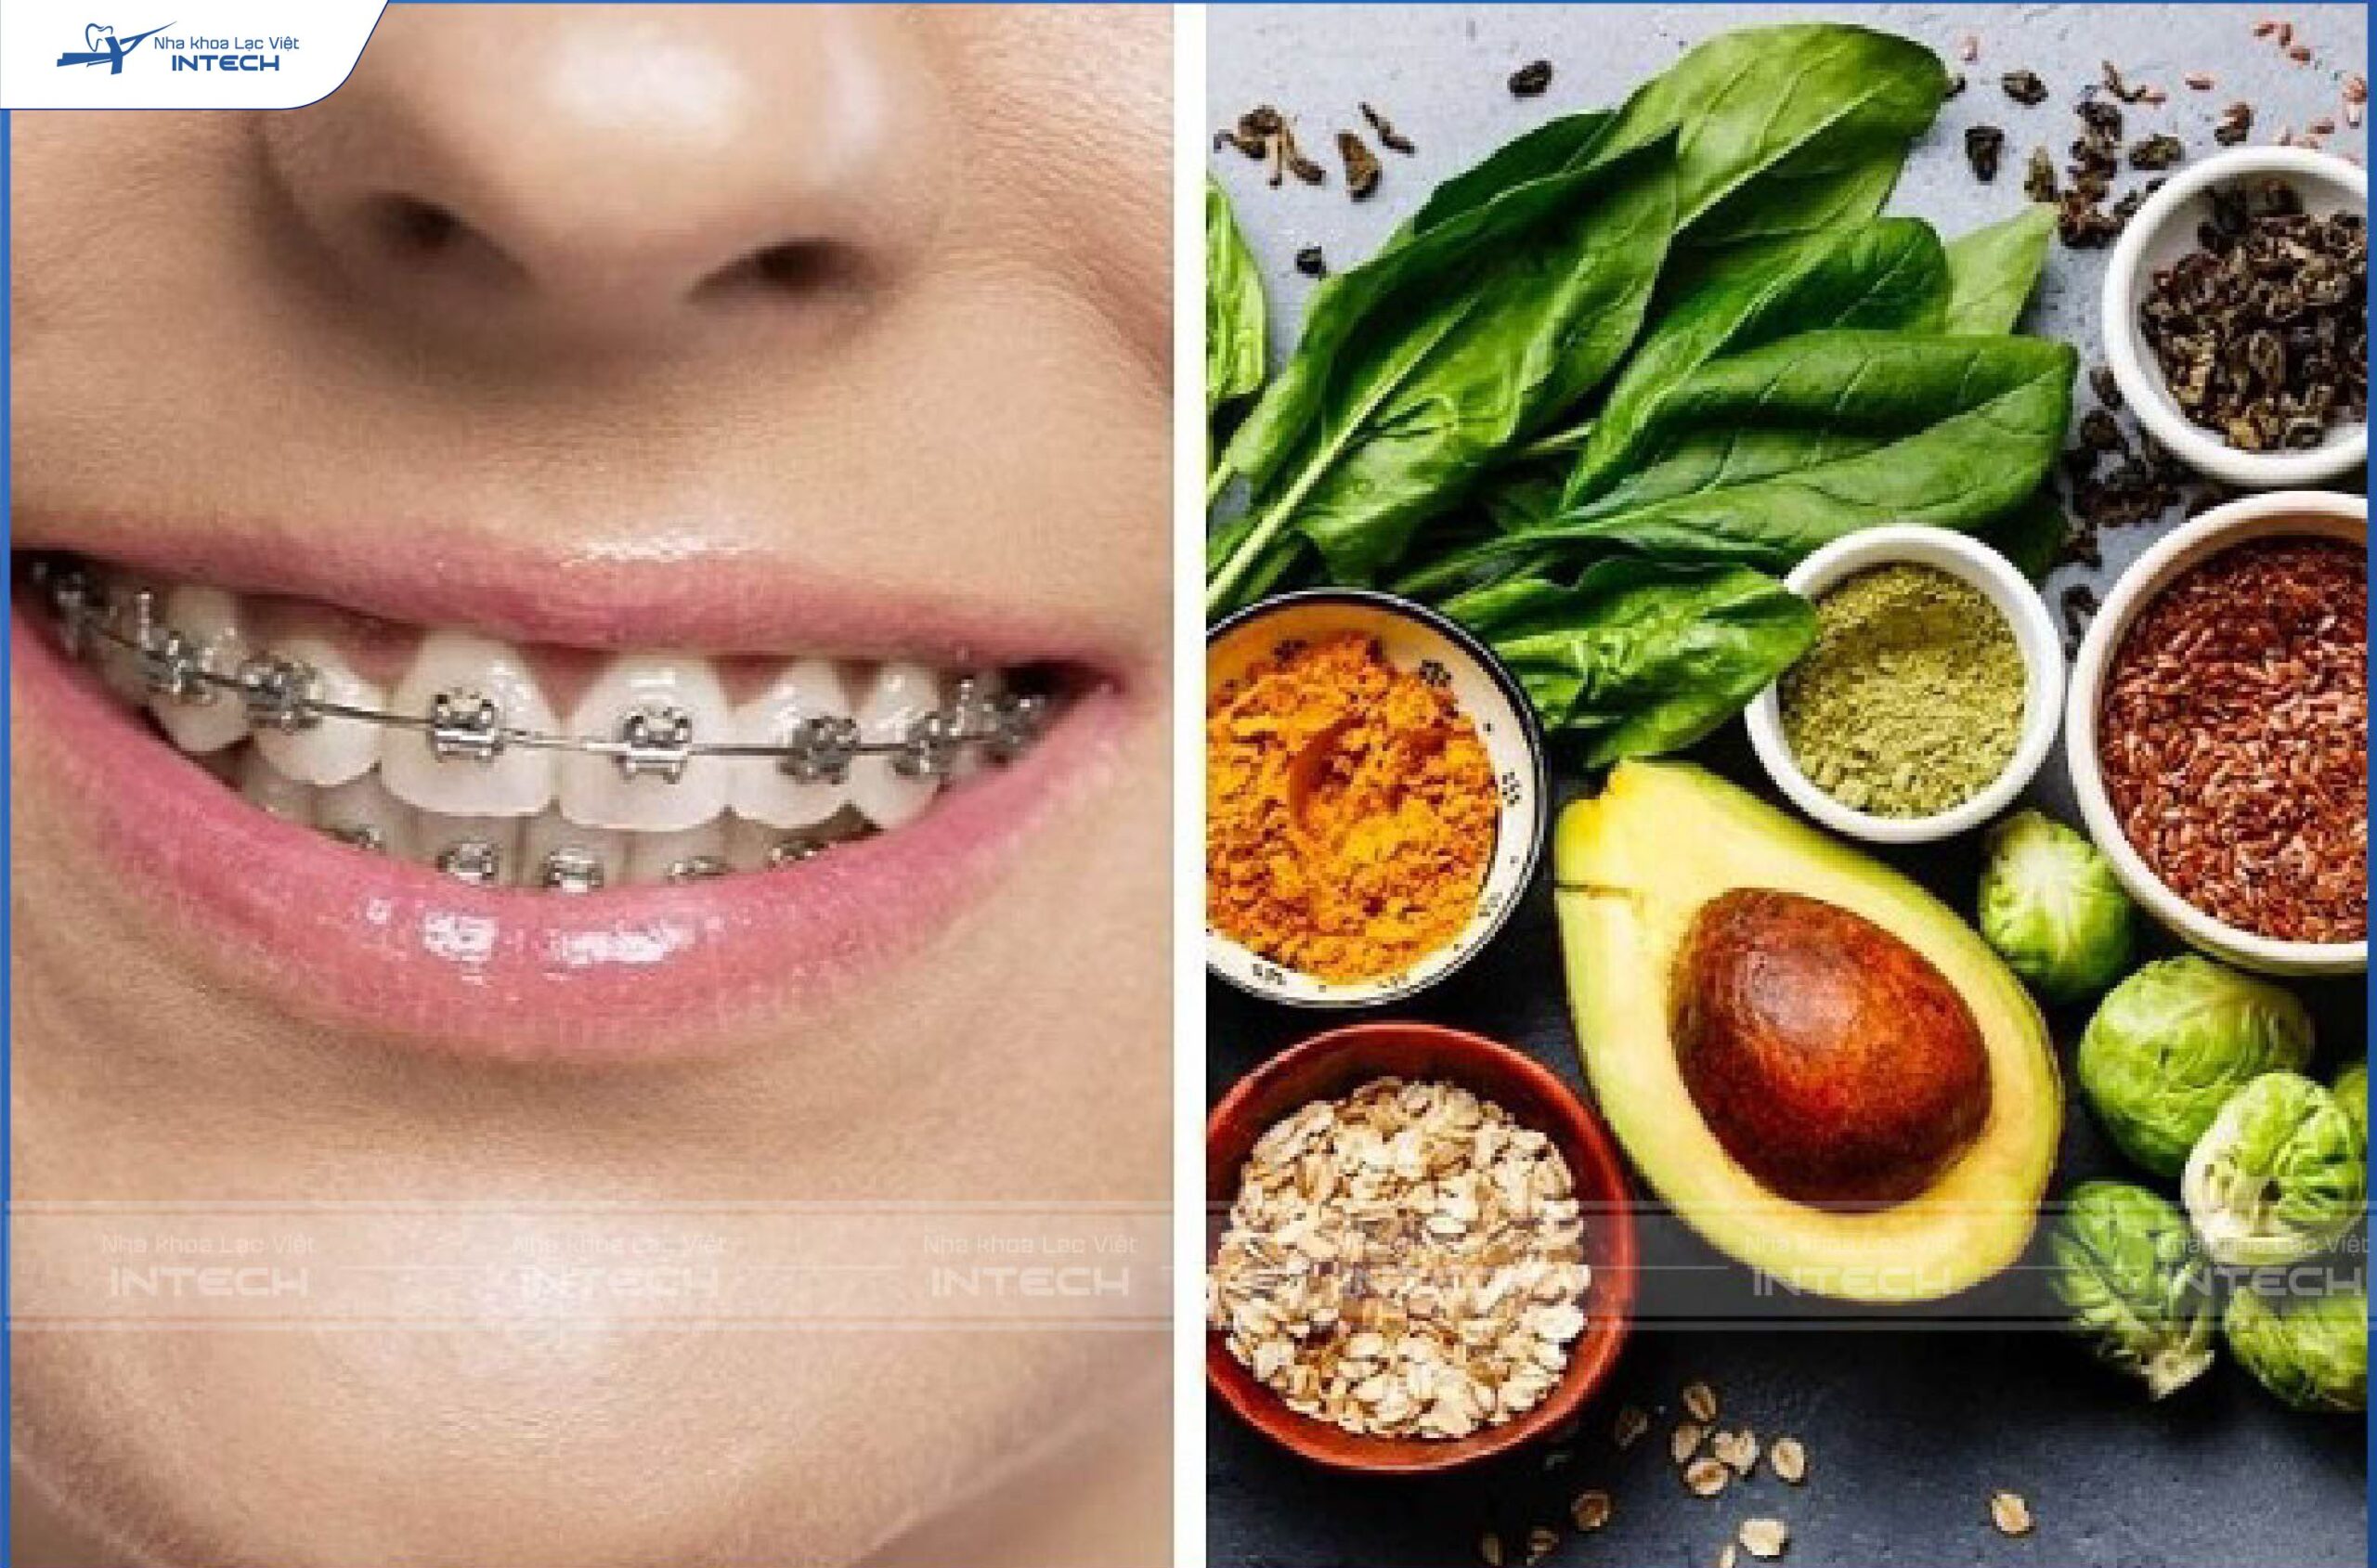 Chế độ dinh dưỡng không đảm bảo dẫn đến răng gặp gò má cao